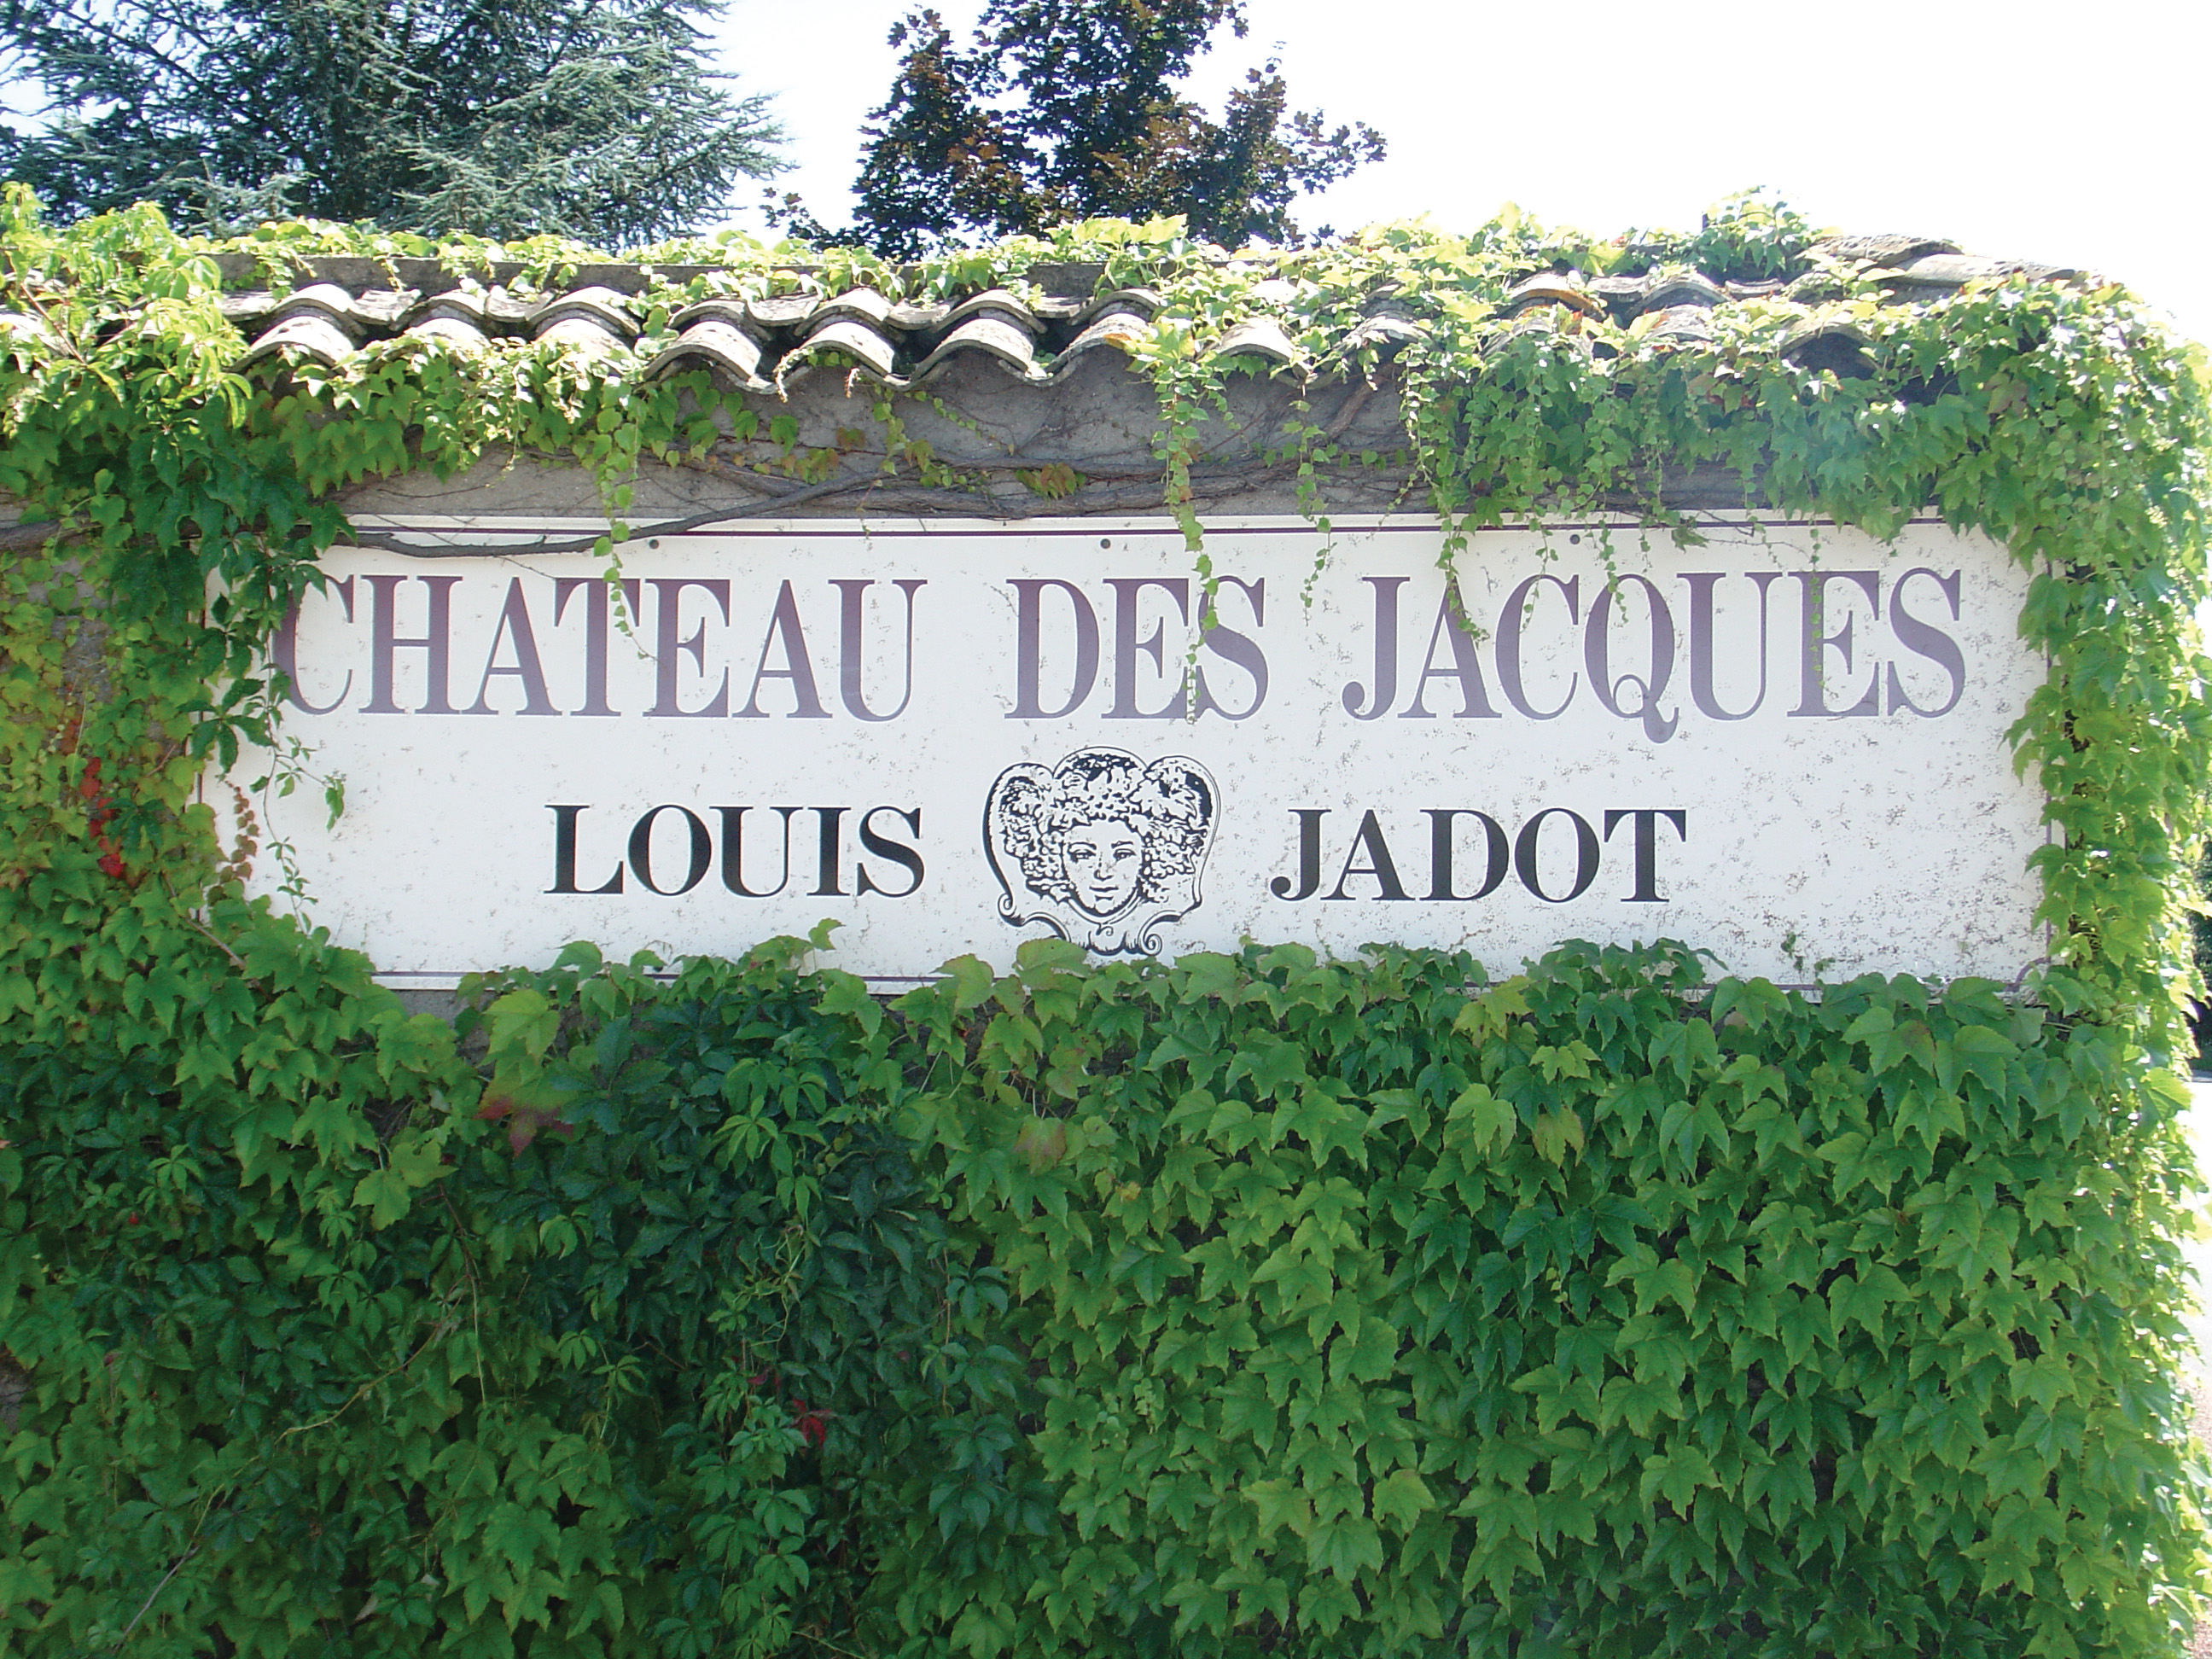 Louis Jadot Moulin-A-Vent Chateau des Jacques 2020 – Willow Park Wines &  Spirits